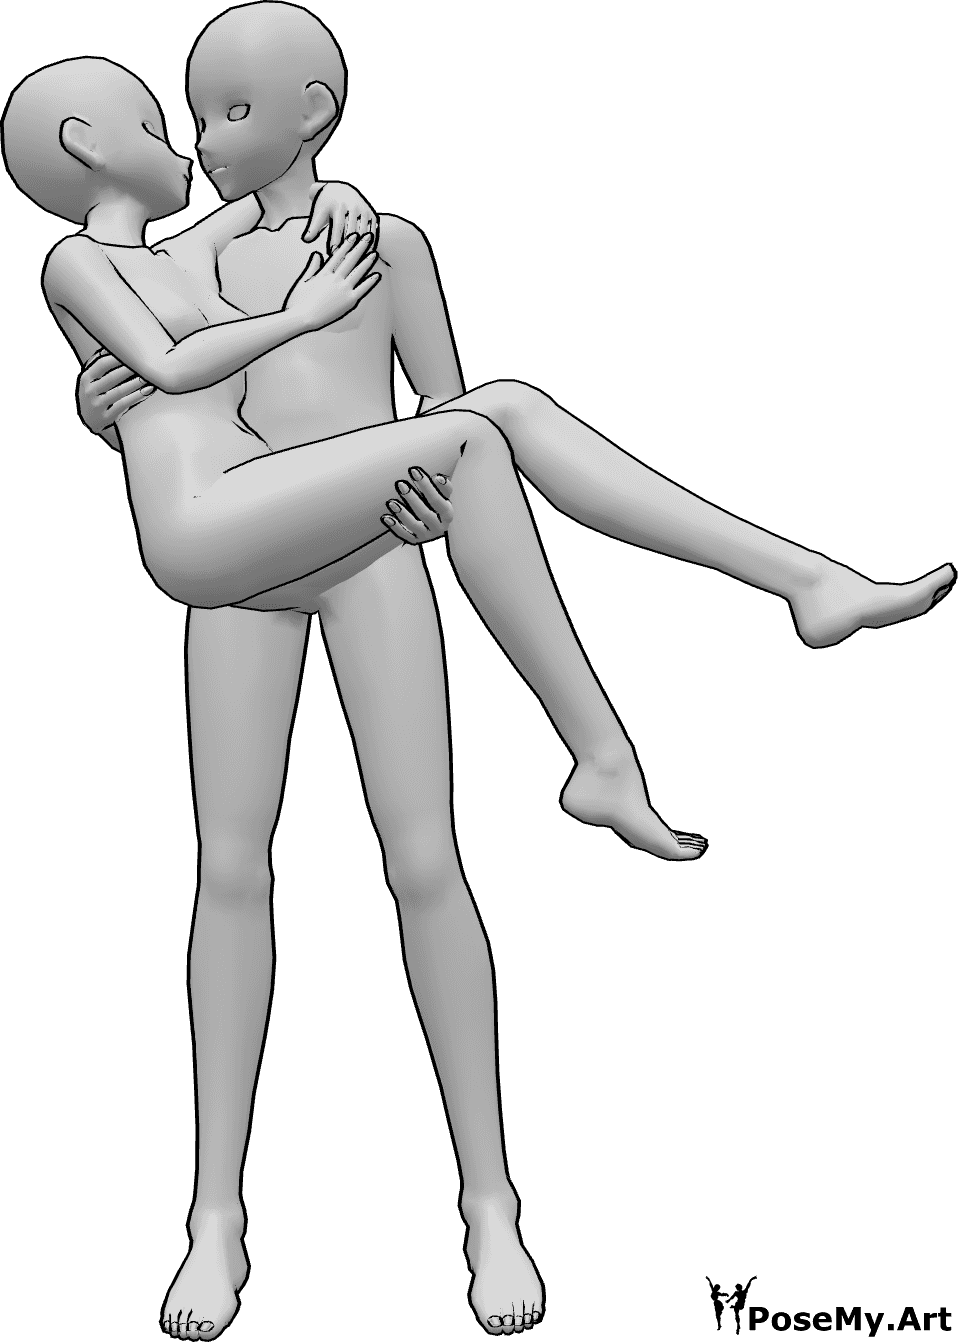 Posen-Referenz- Anime hält küssende Pose - Anime-Männchen hält das Weibchen in seinen Armen, sie schauen sich an und küssen sich